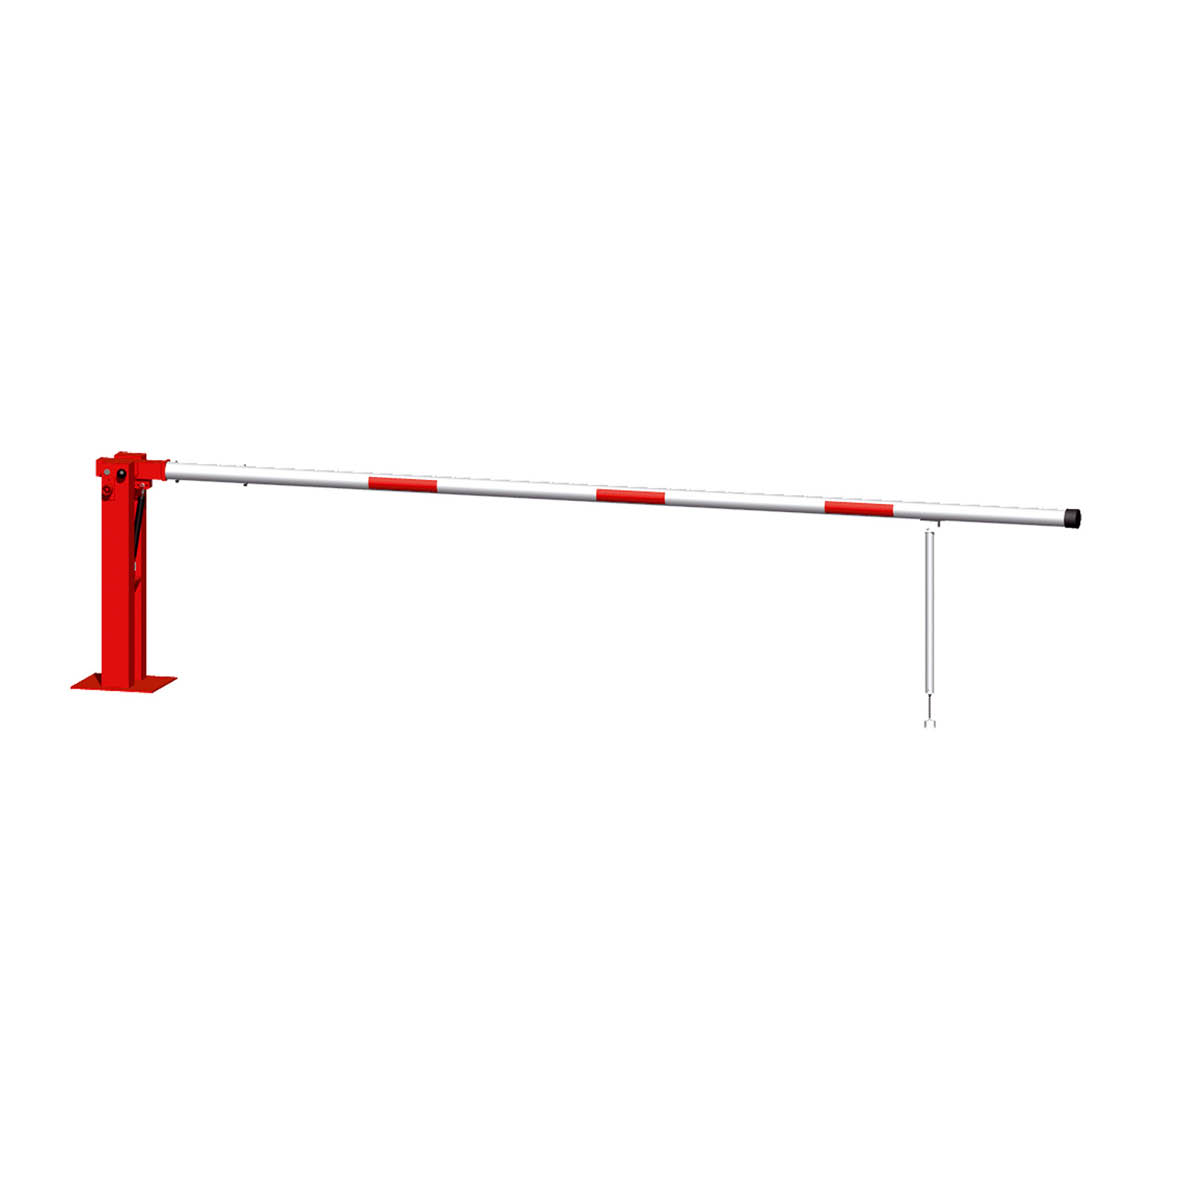 Handschranke Vorhängeschloss, mit Gasdruckfeder und Pendelstütze, 600 cm, verzinkt, rot-weiss, 52 kg